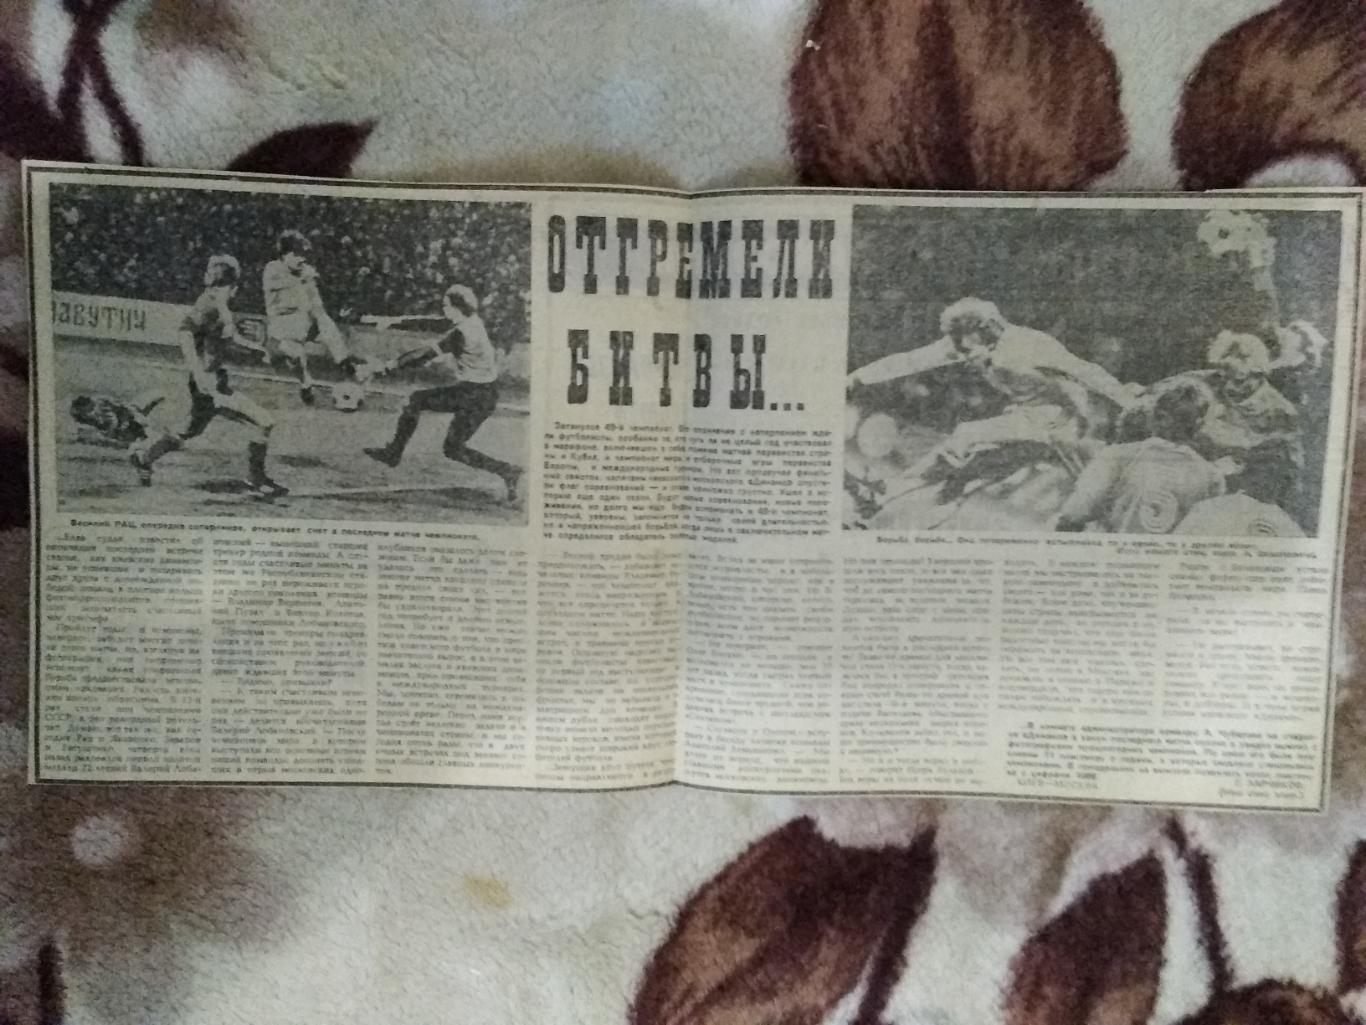 Статья.Футбол.Отгремели битвы... (Динамо-Киев,СССР).Советский спорт 1986.